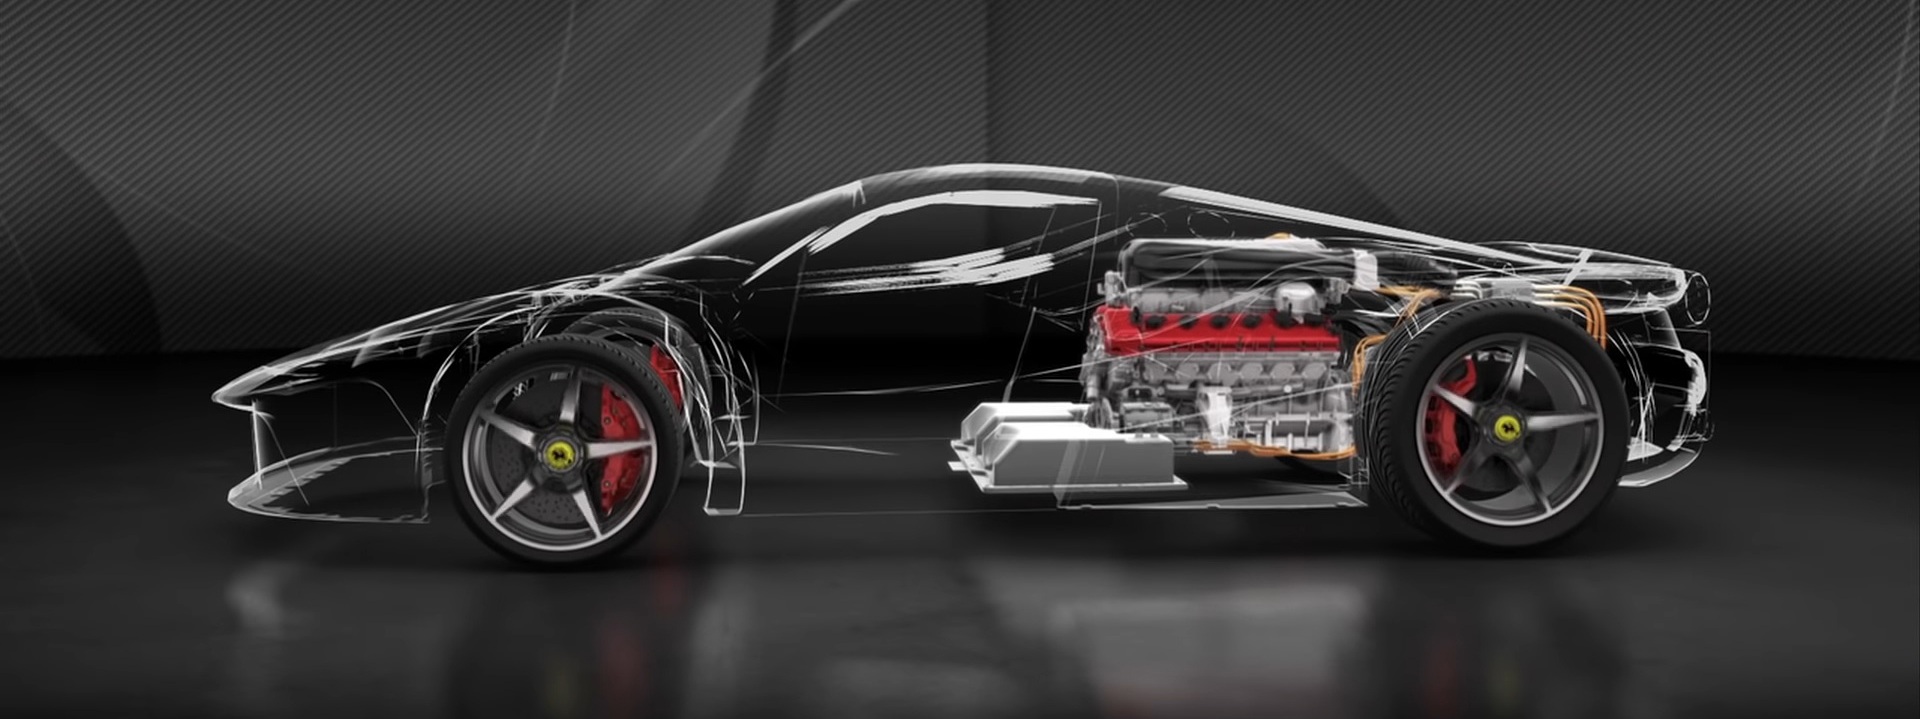 El nuevo Ferrari híbrido tendrá 1.000 CV, tracción total y tres motores eléctricos